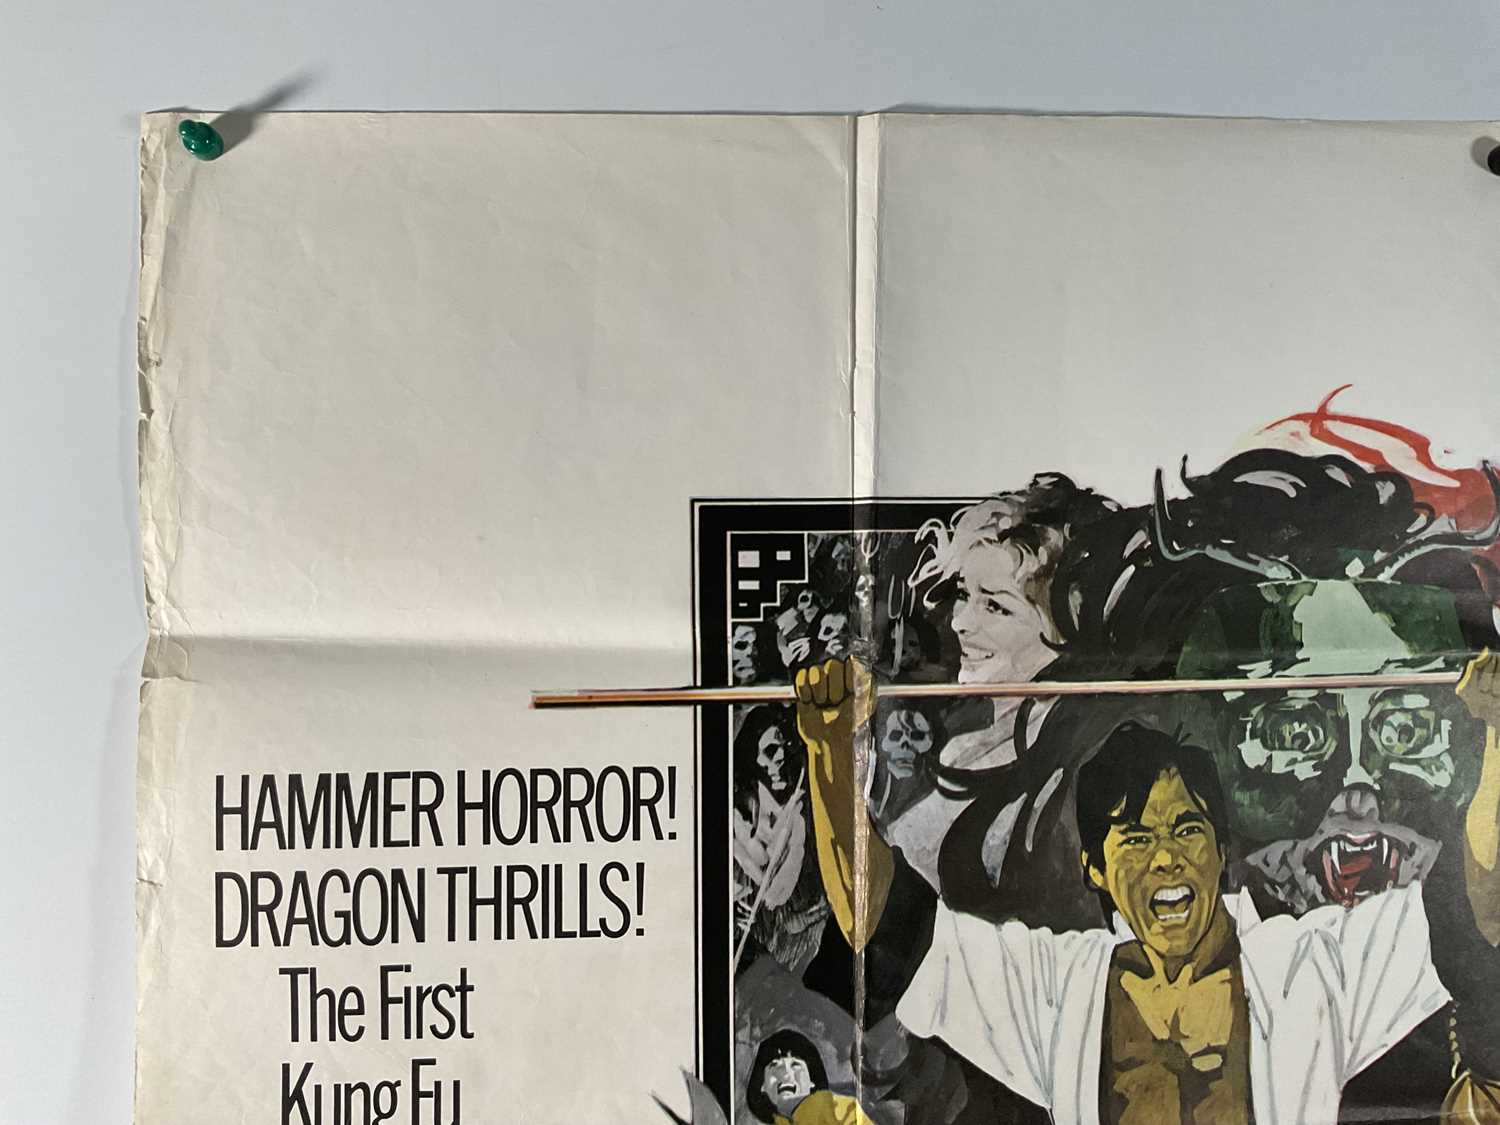 THE LEGEND OF THE SEVEN GOLDEN VAMPIRES (1974) UK Quad film poster, Hammer Horror starring Peter - Image 5 of 6